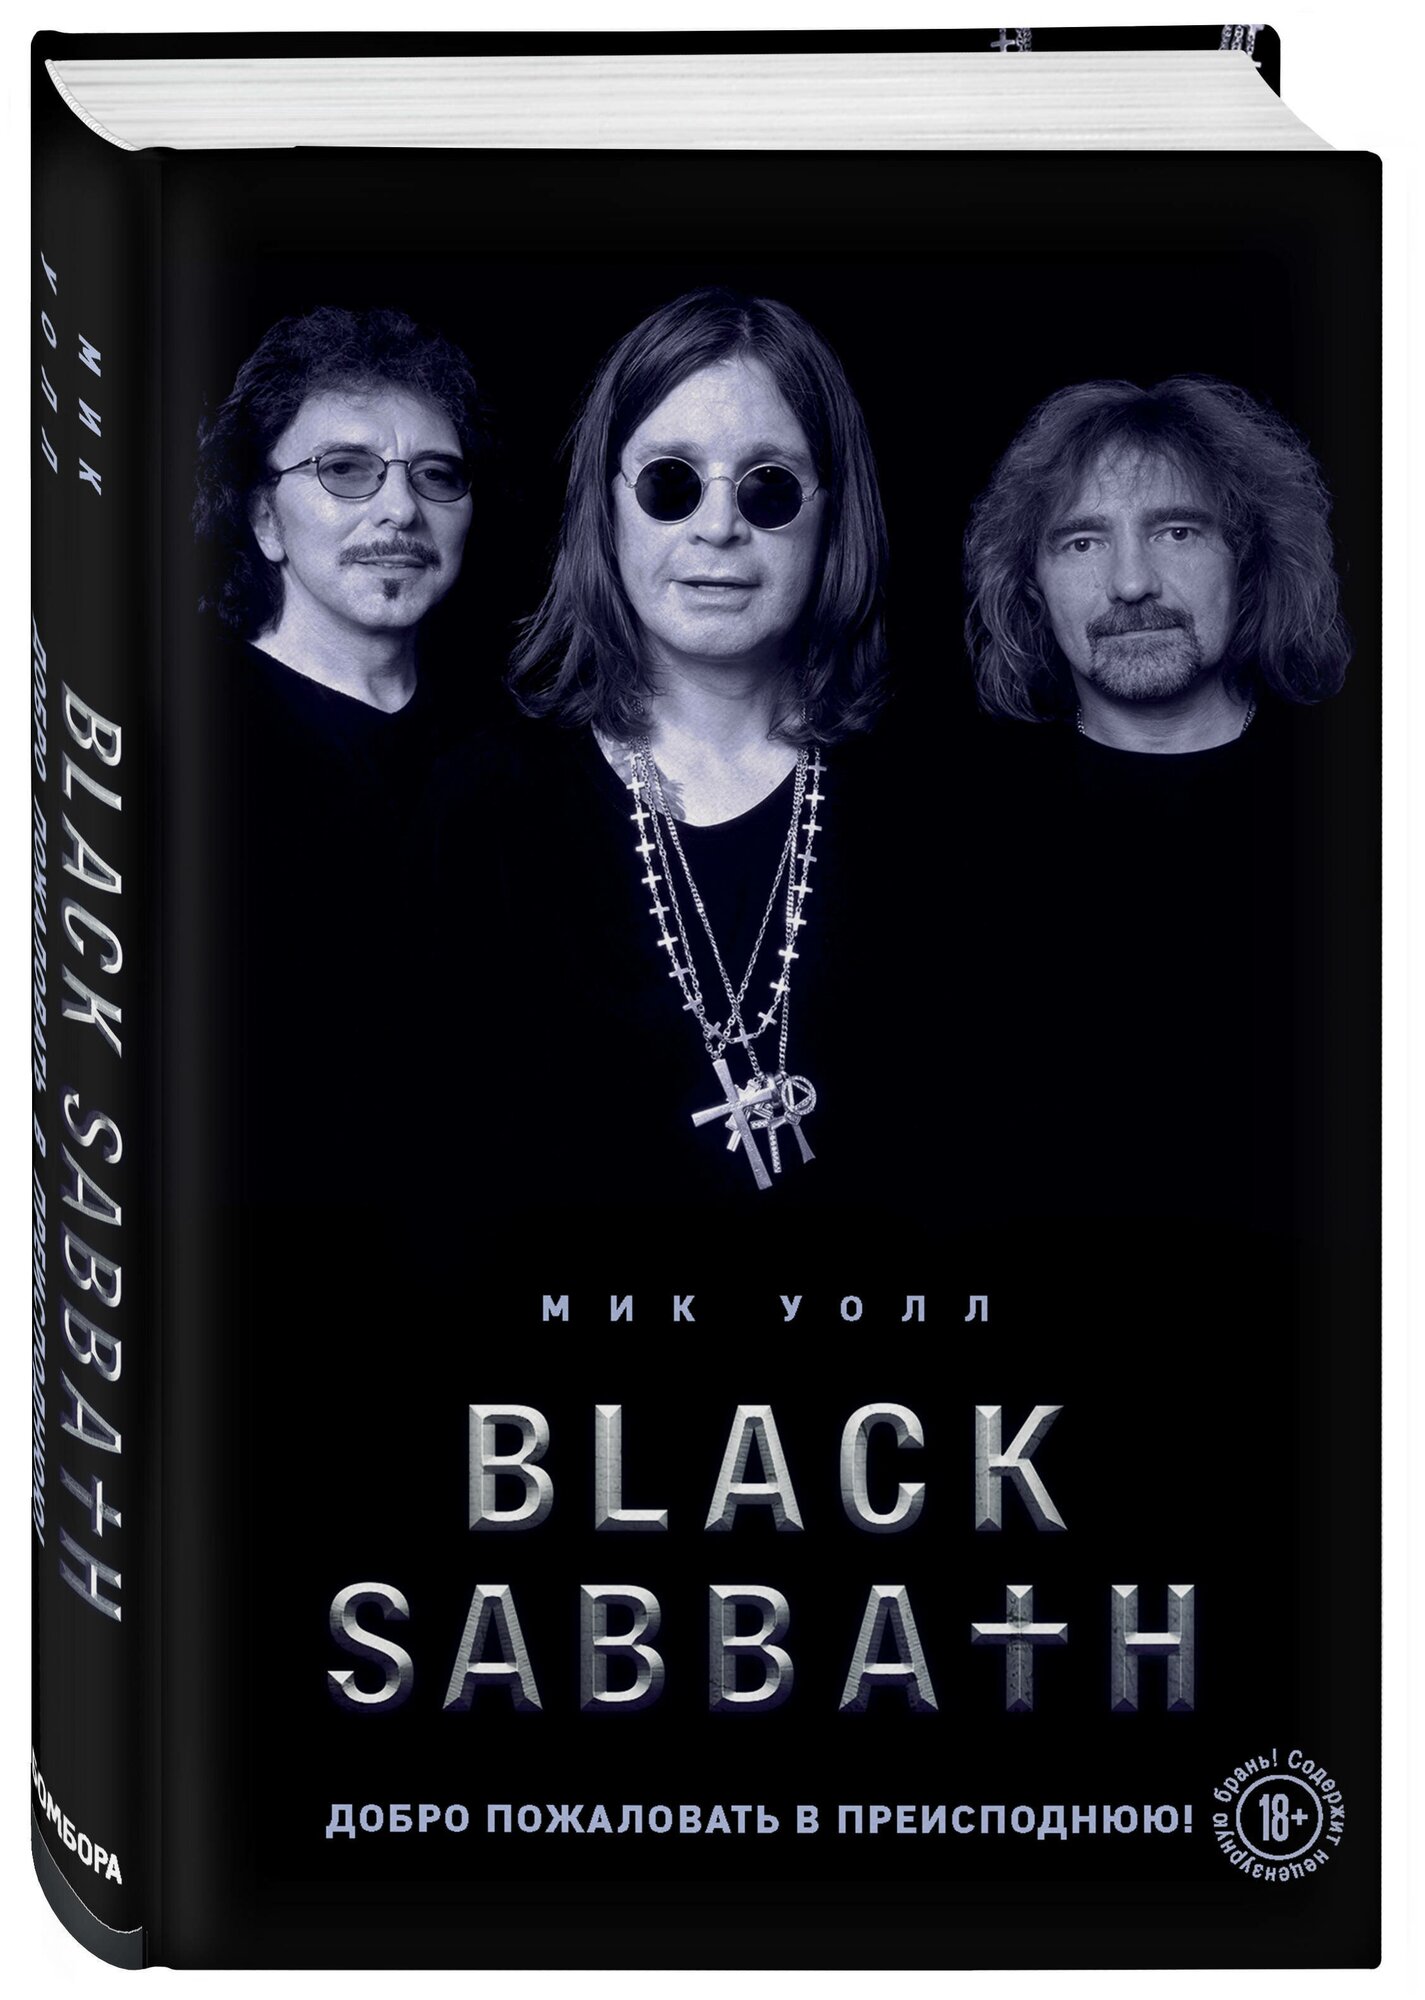 Black Sabbath. Добро пожаловать в преисподнюю! - фото №2